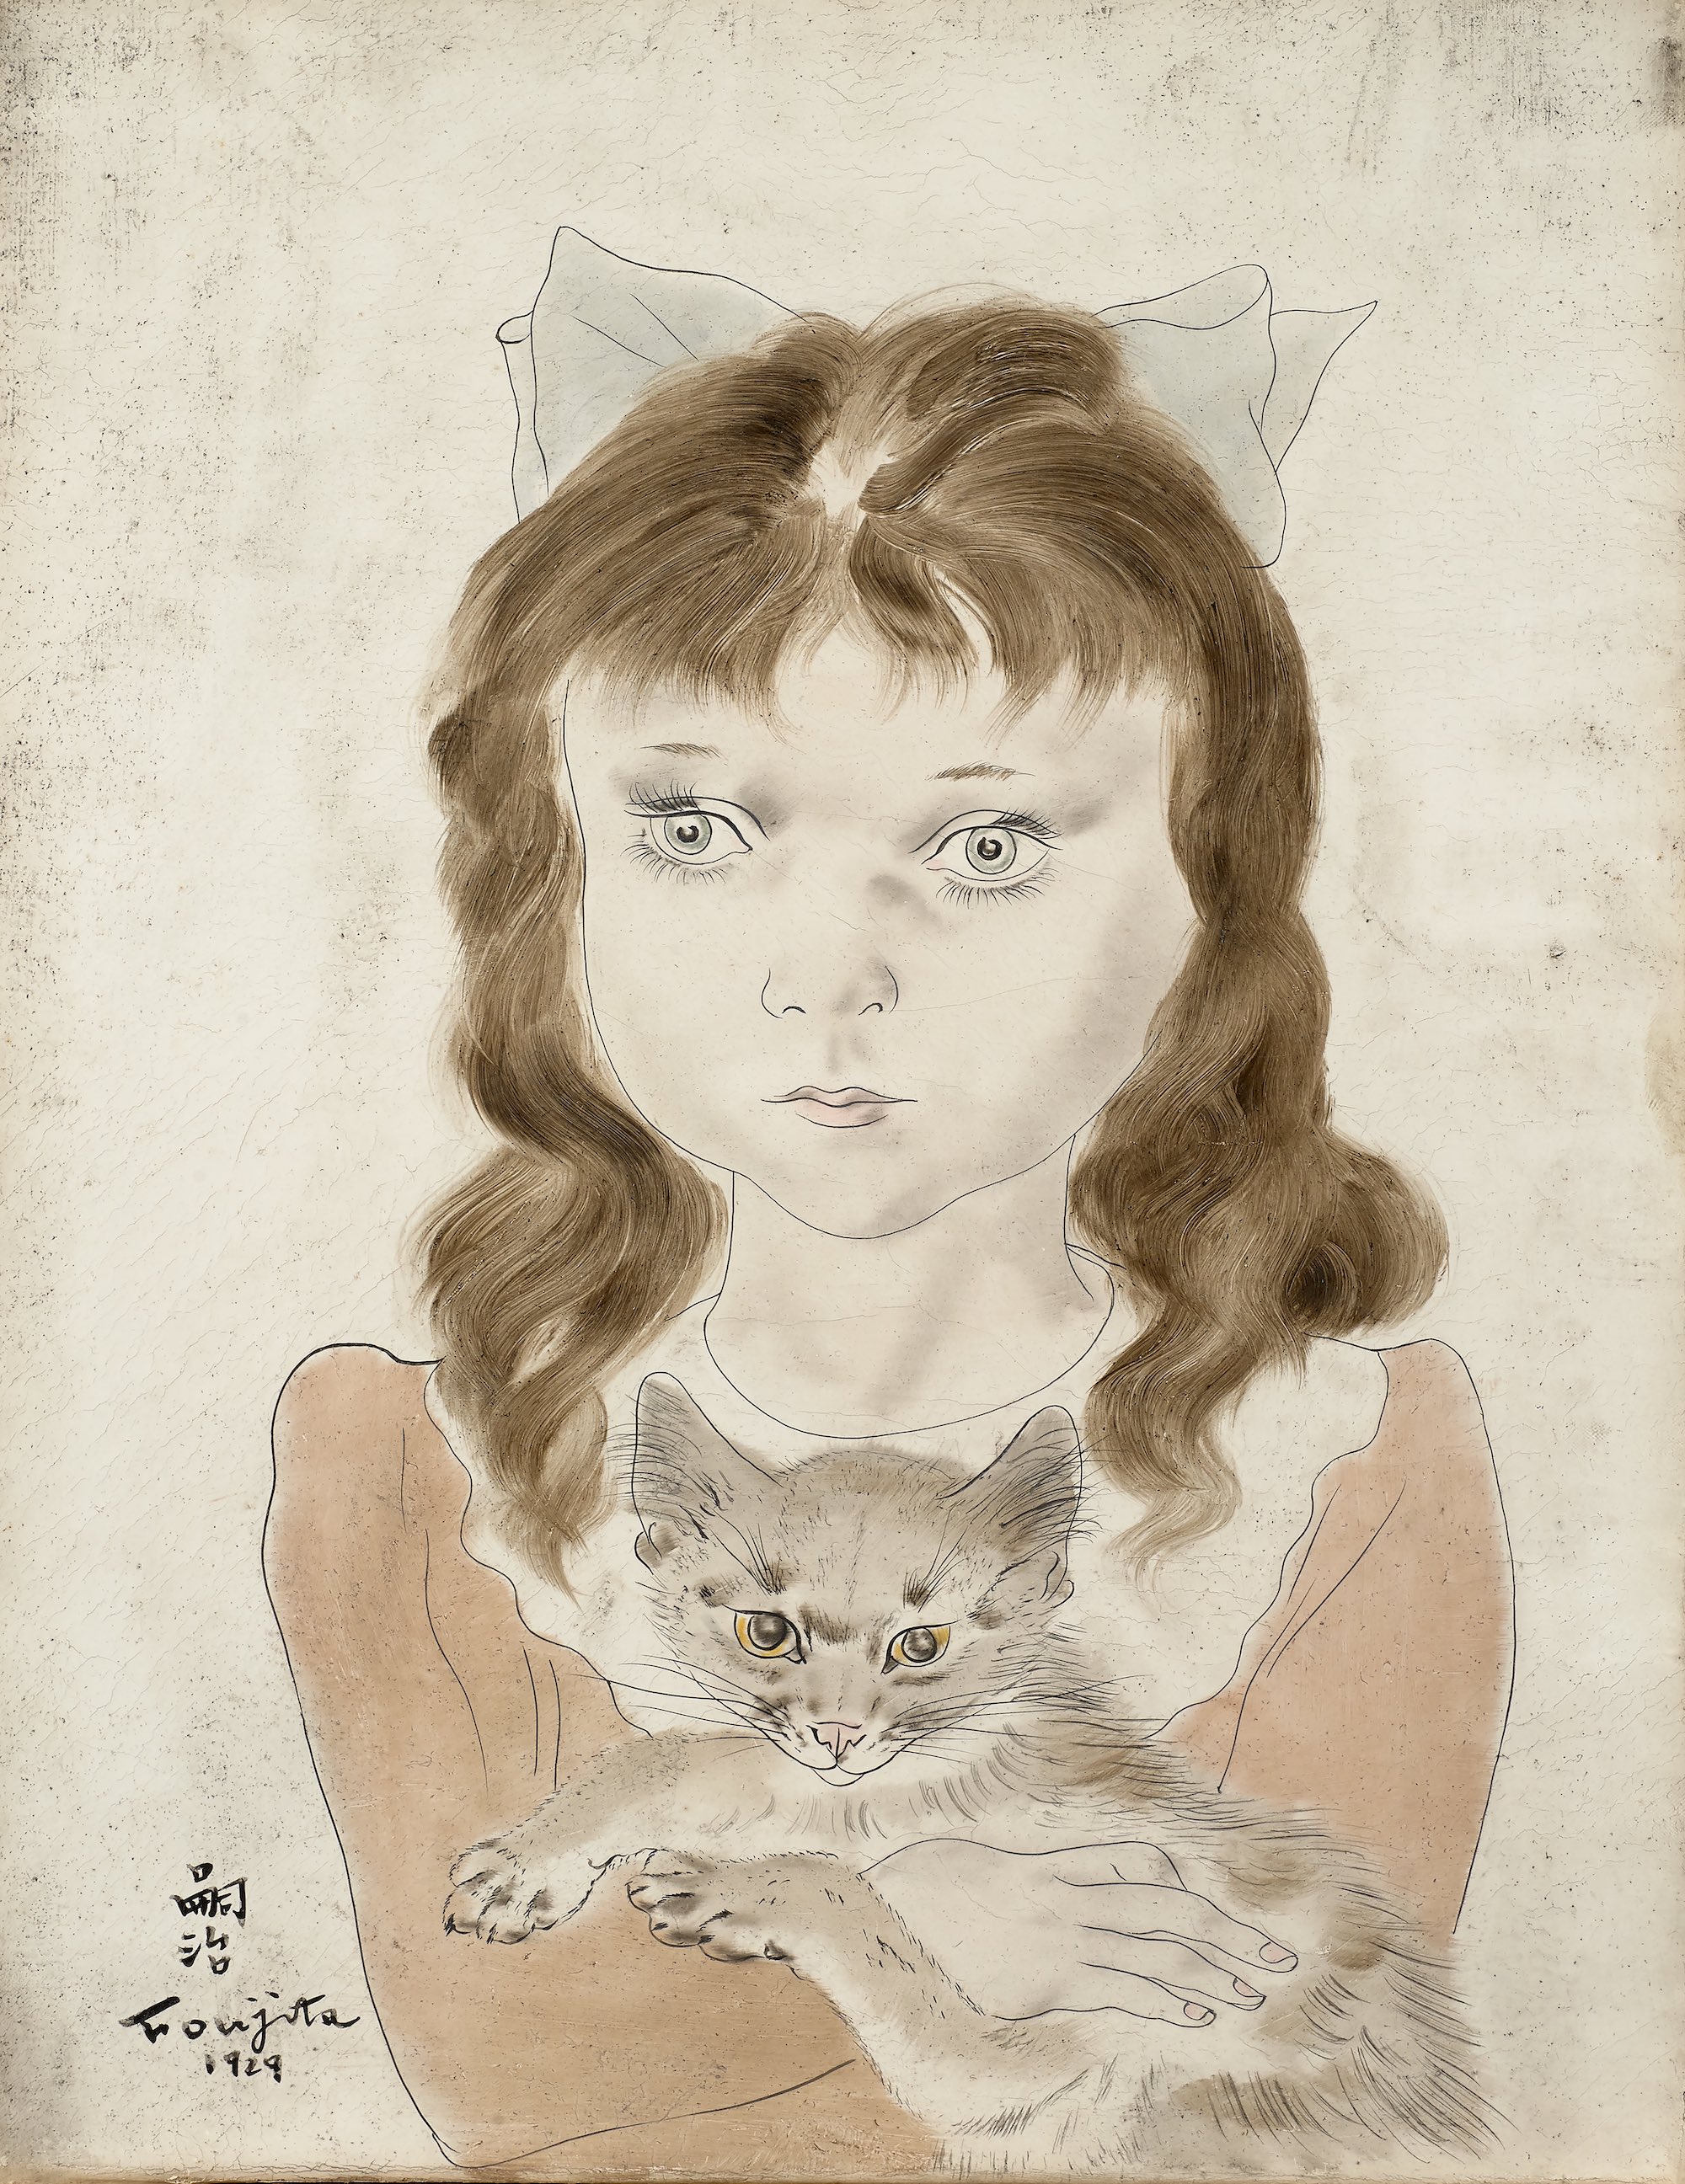 Petite fille au chat, expo “Foujita, peindre dans les Années folles”, jusqu’au 15 juillet 1018 au Musée Maillol, 61 rue de Grenelle, 75007 Paris